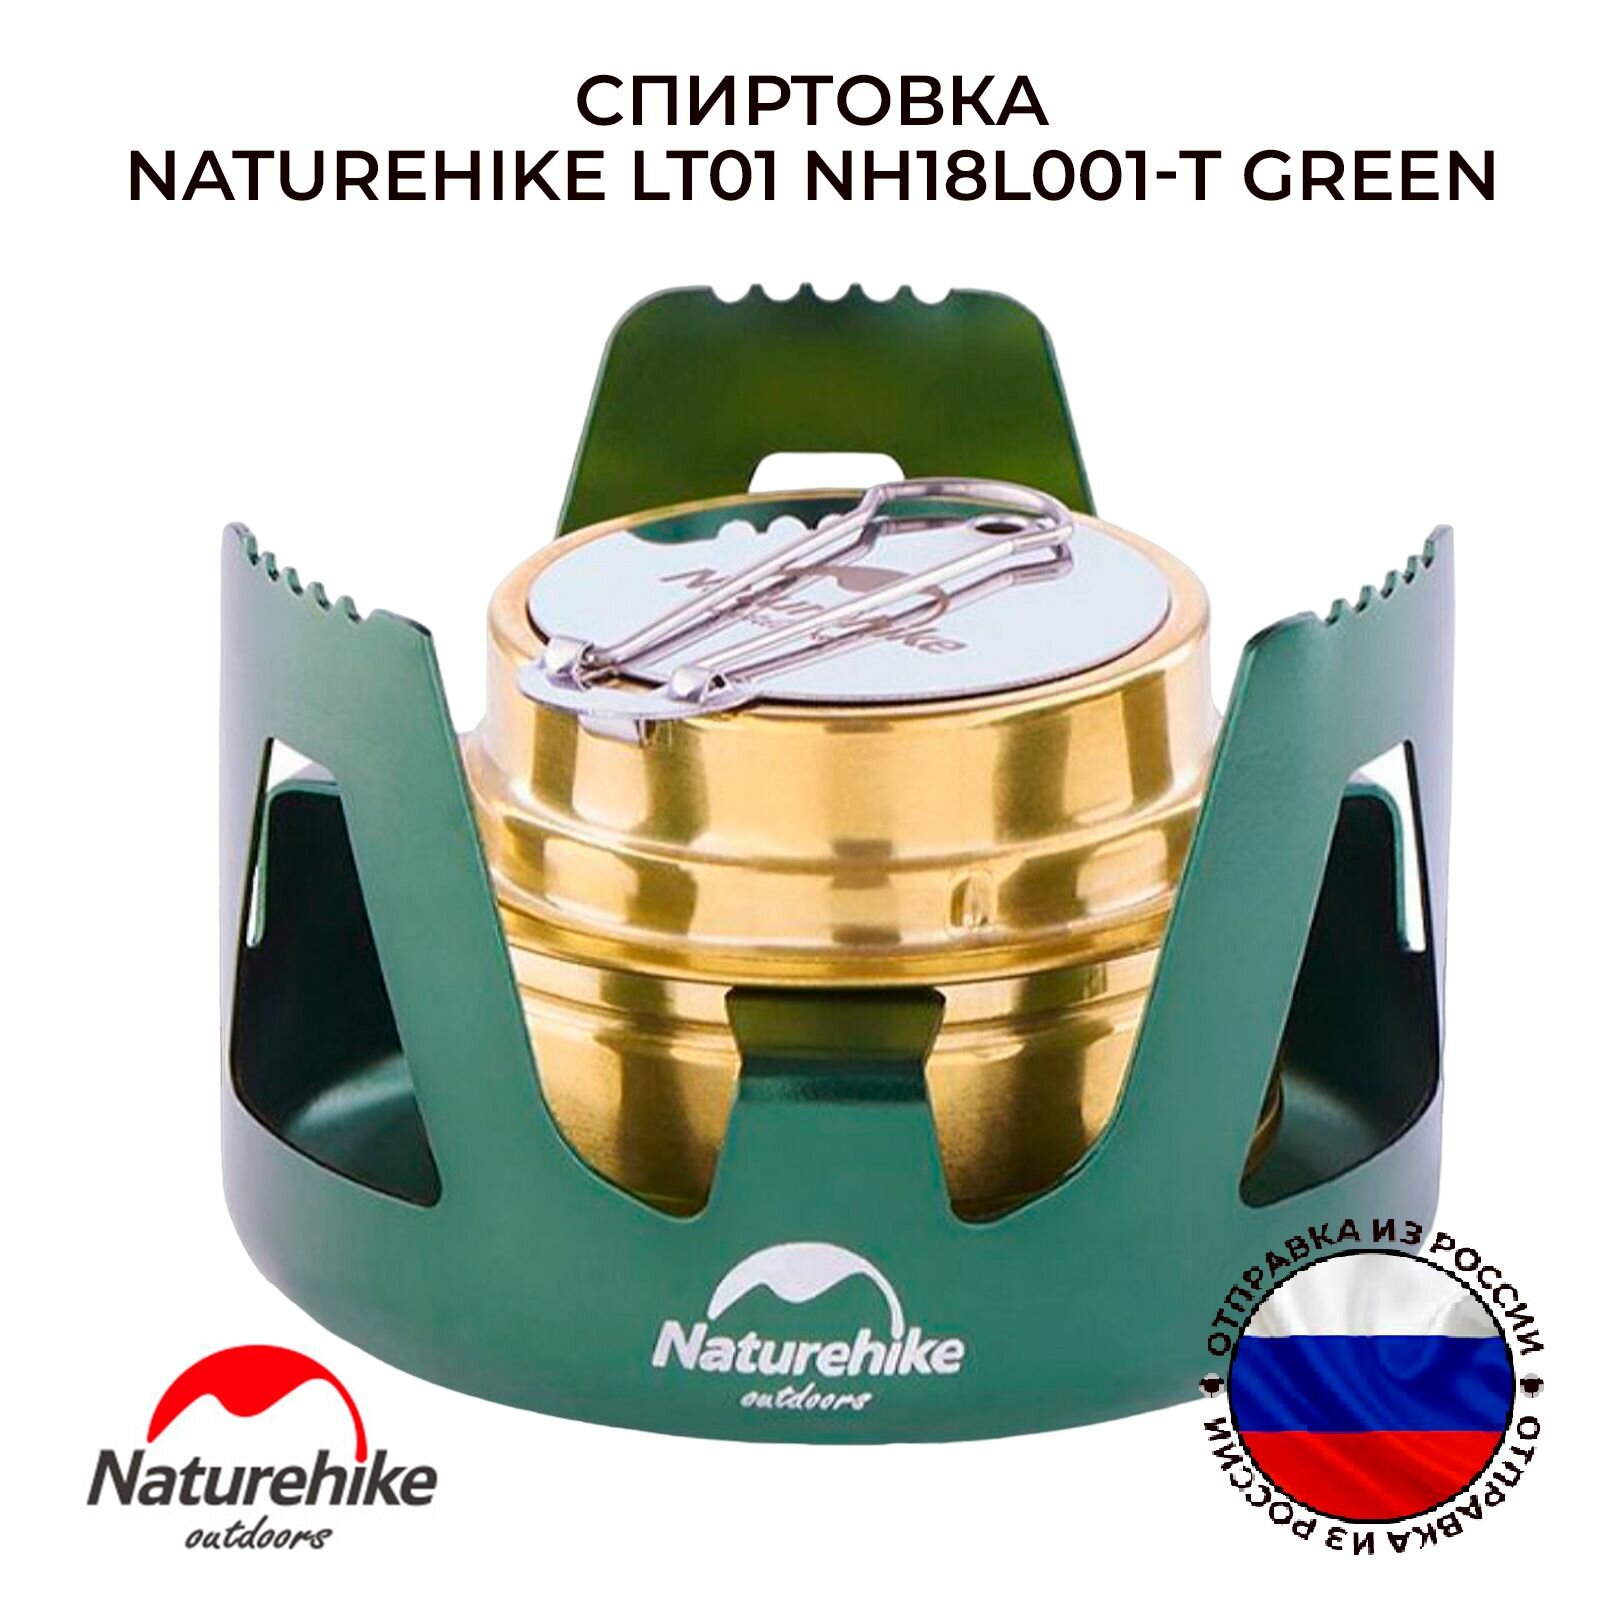 Спиртовка Naturehike LT01 NH18L001-T green